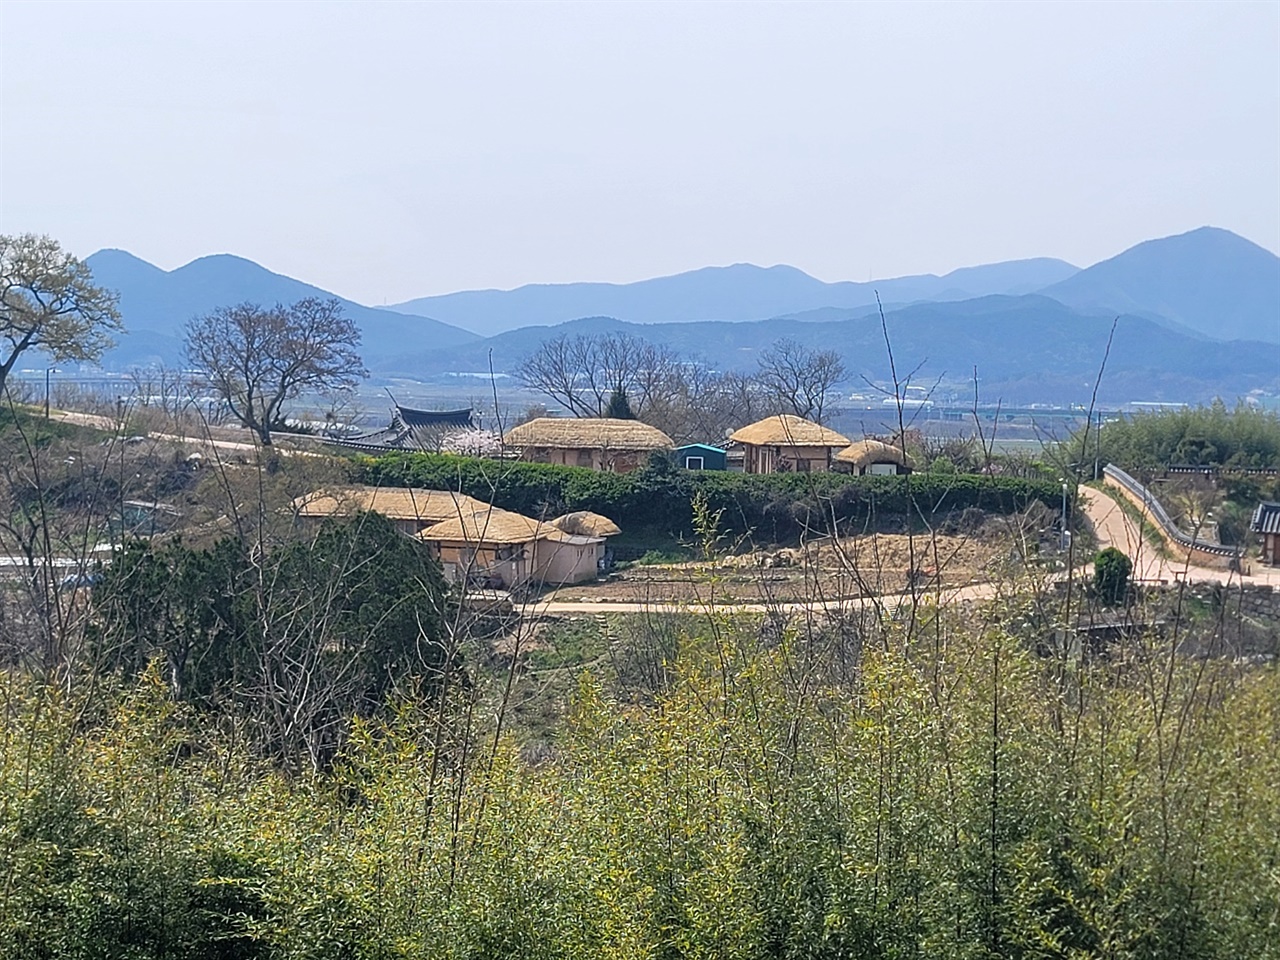 경주시 강동면에 있는 월성 손 씨와 여강 이 씨의 동족 마을. 조선시대의 가옥과 문화, 생활을 간직한 곳으로 중요한 가치를 지닌 마을